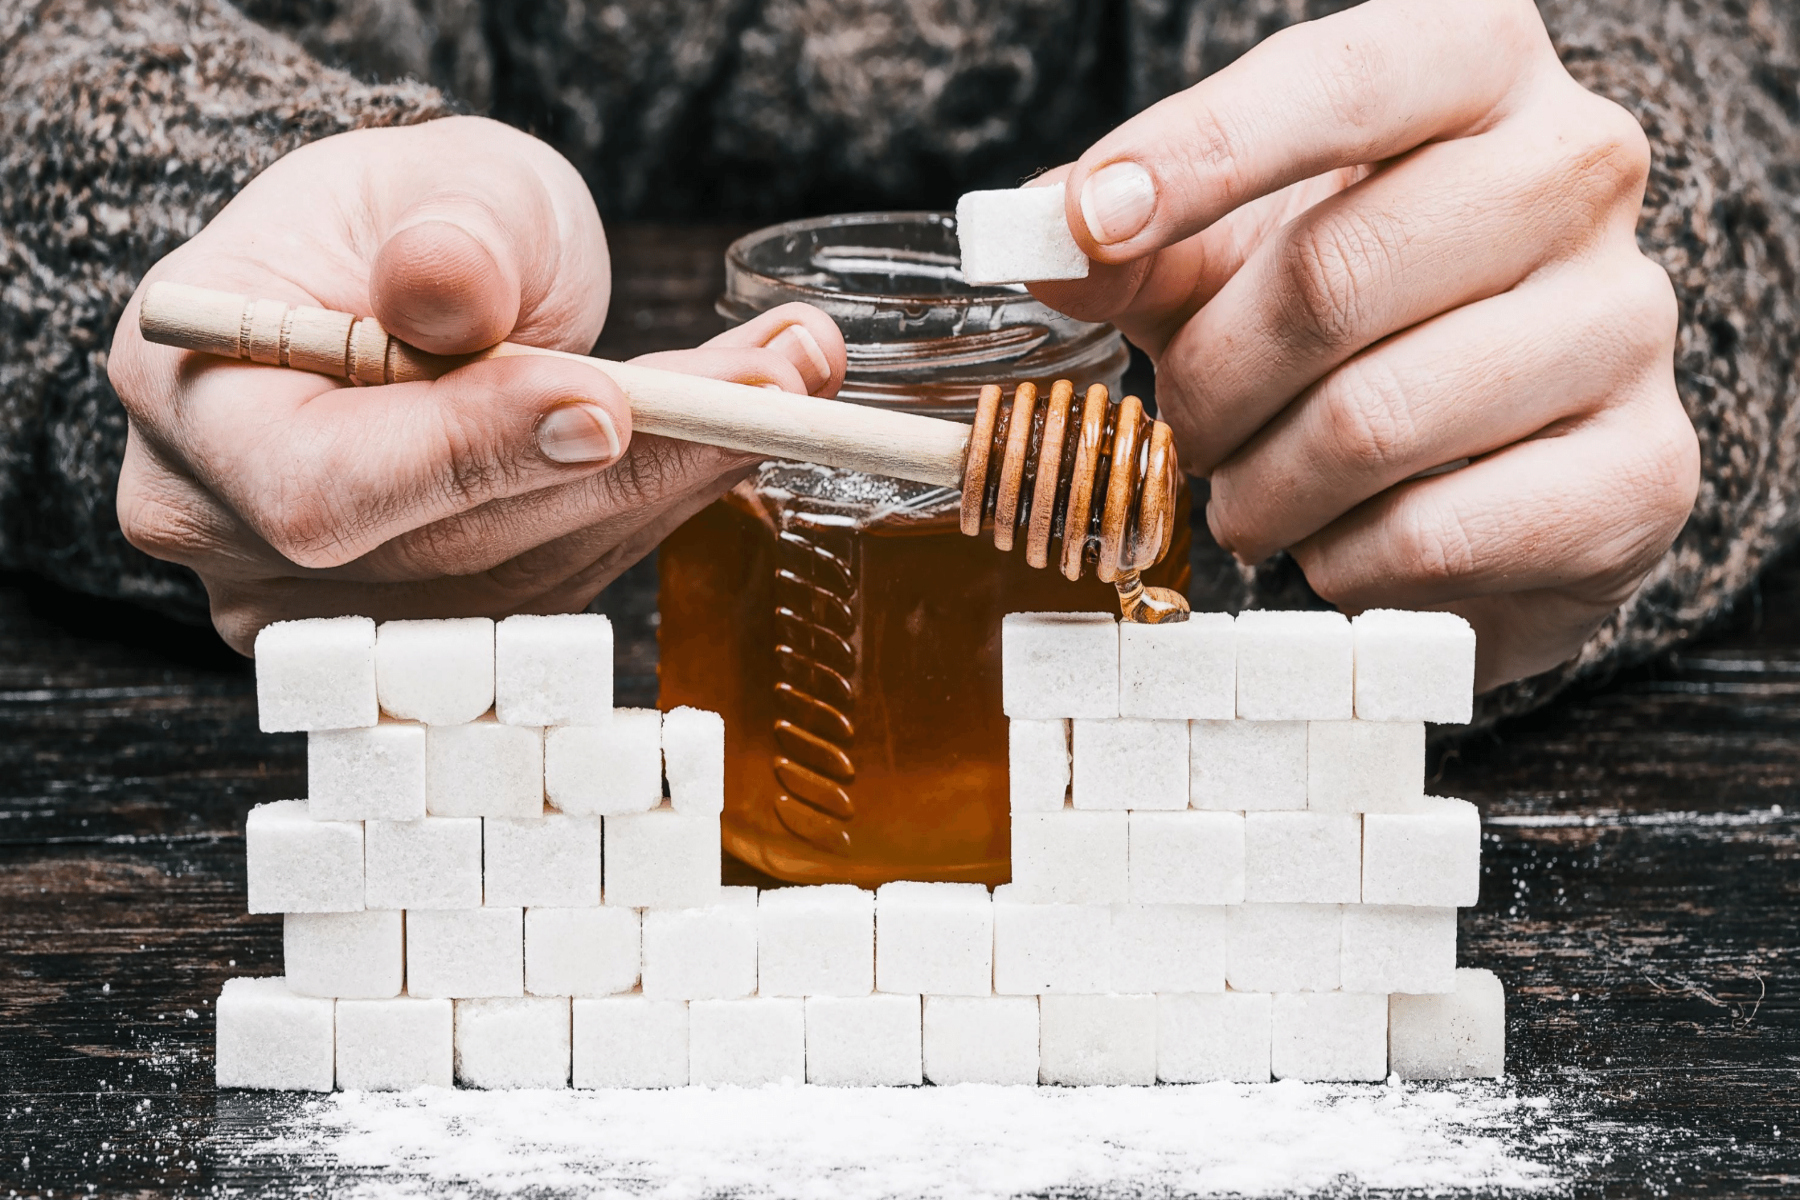 Γλυκαντικά: Το μέλι ή η ζάχαρη είναι το καλύτερο γλυκαντικό για το ποτό σας;